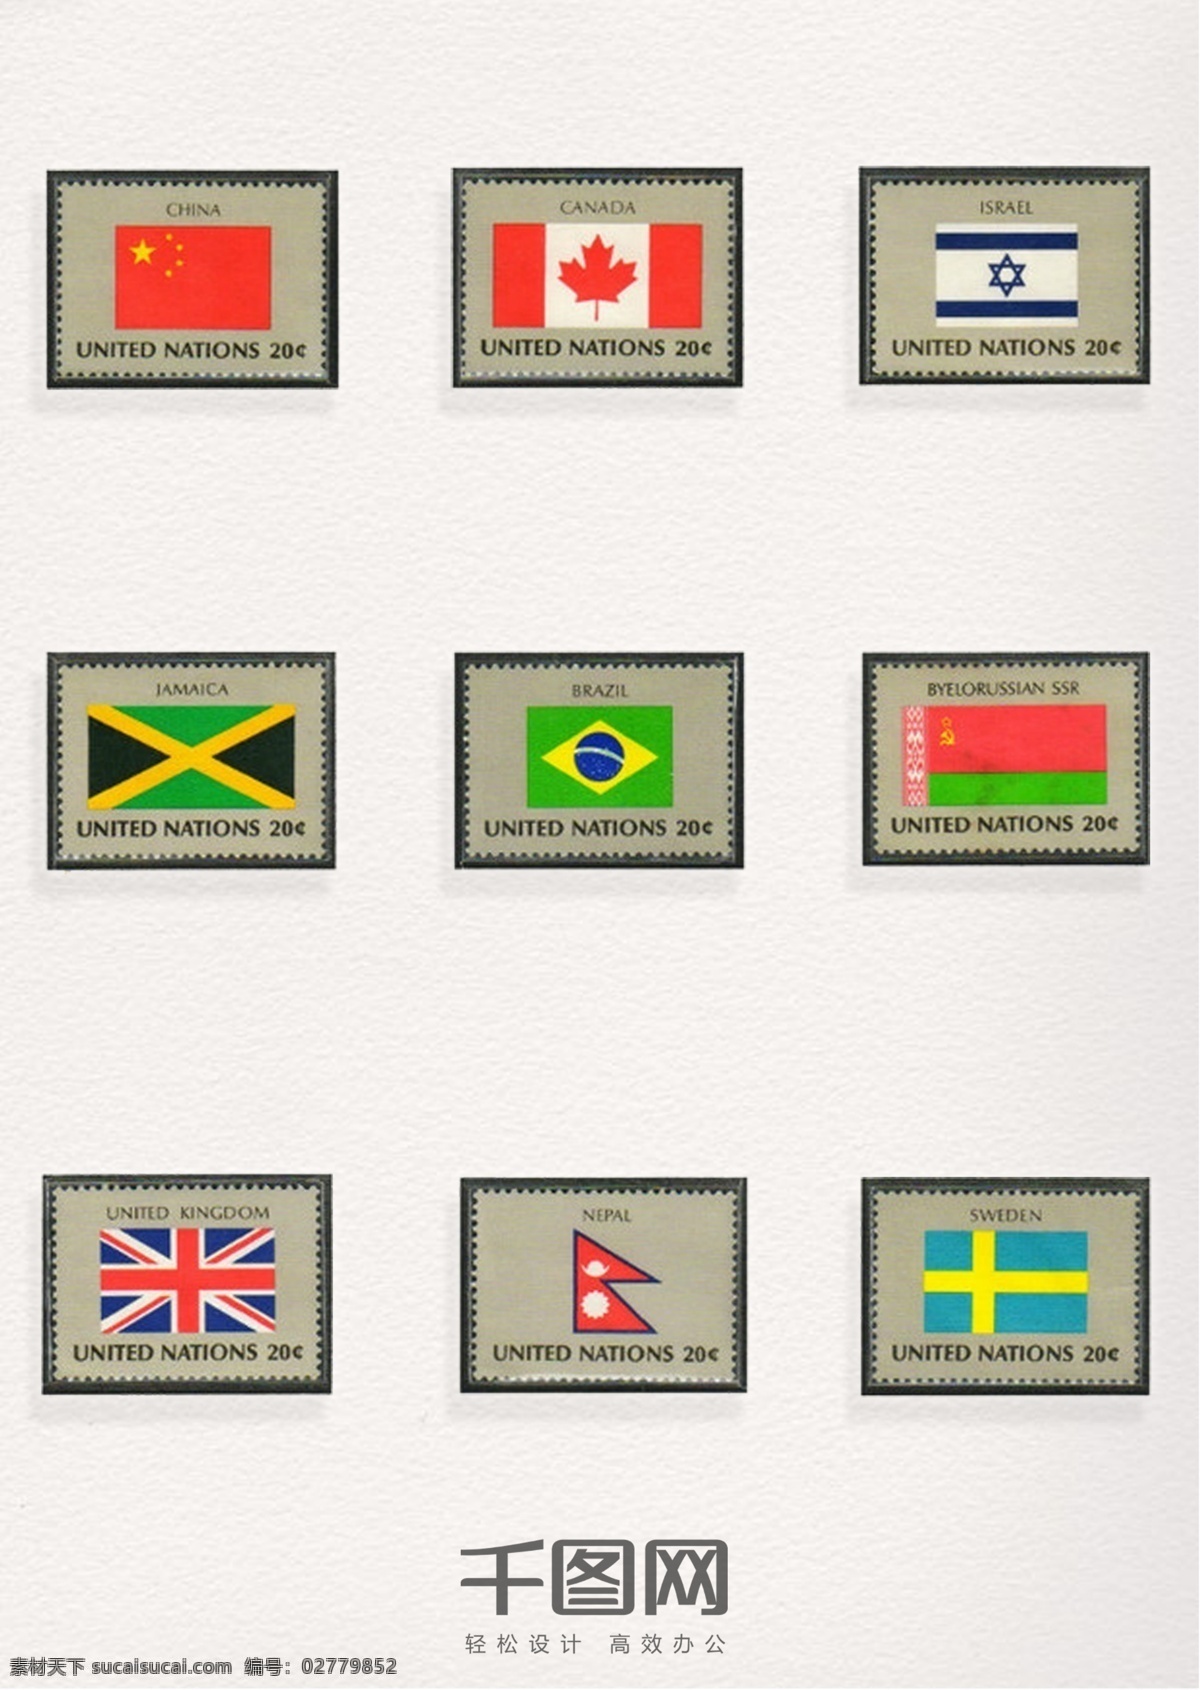 国旗 图案 邮票 元素 装饰 国旗邮票 国旗图案 邮票元素 邮票图案 邮票装饰元素 彩色邮票